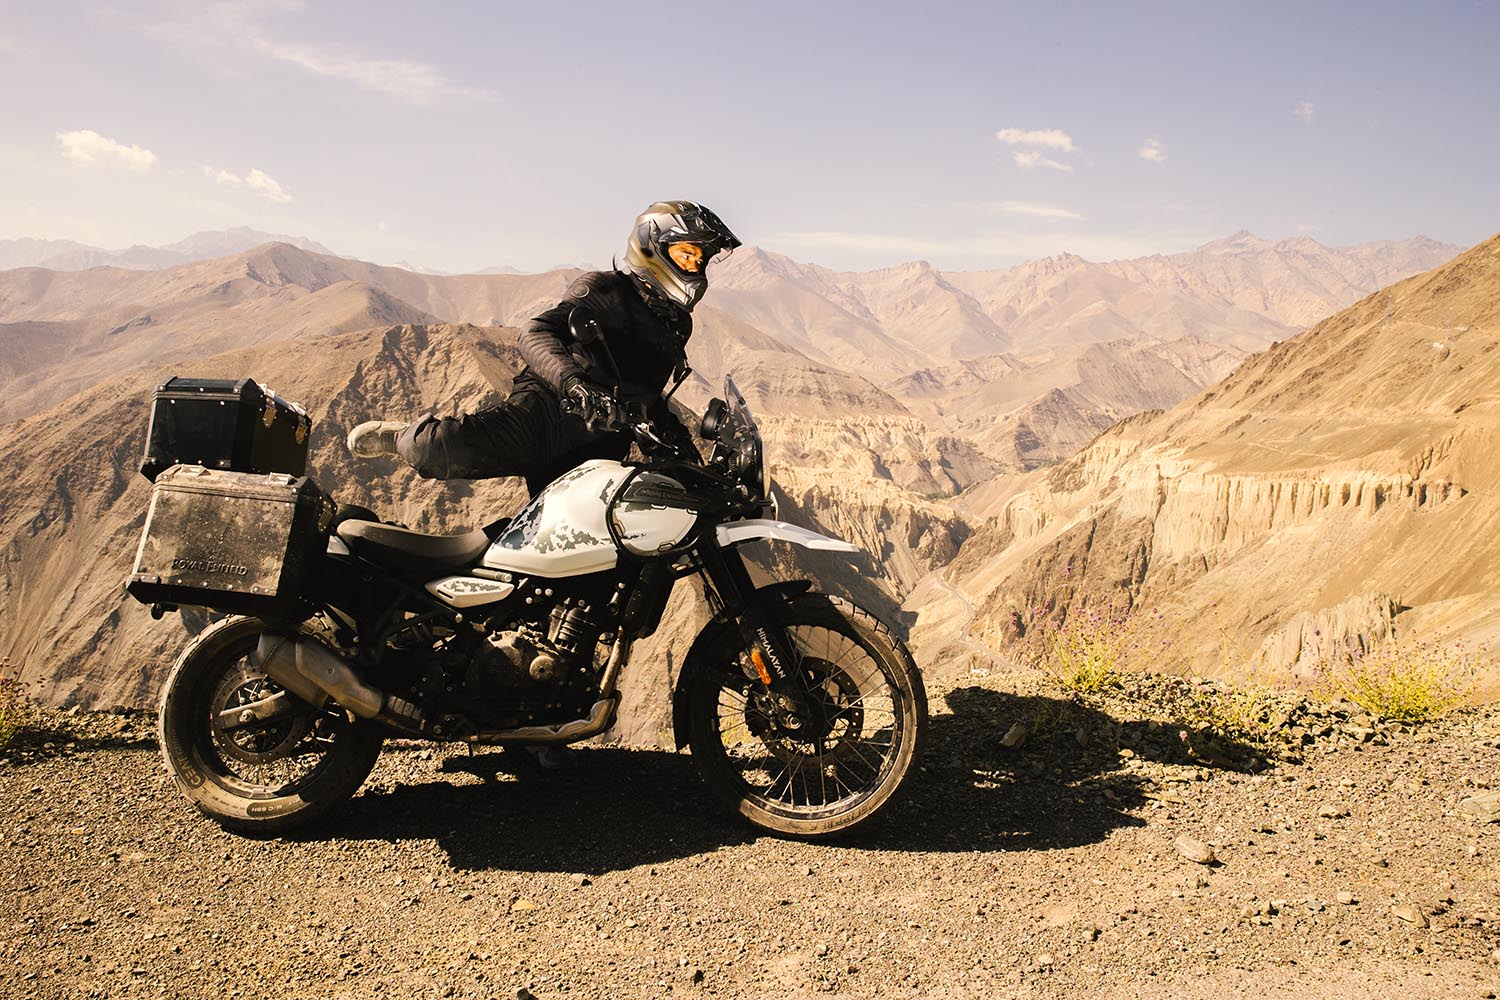 La nueva Royal Enfield Himalayan 450 es una moto preparada para la aventura